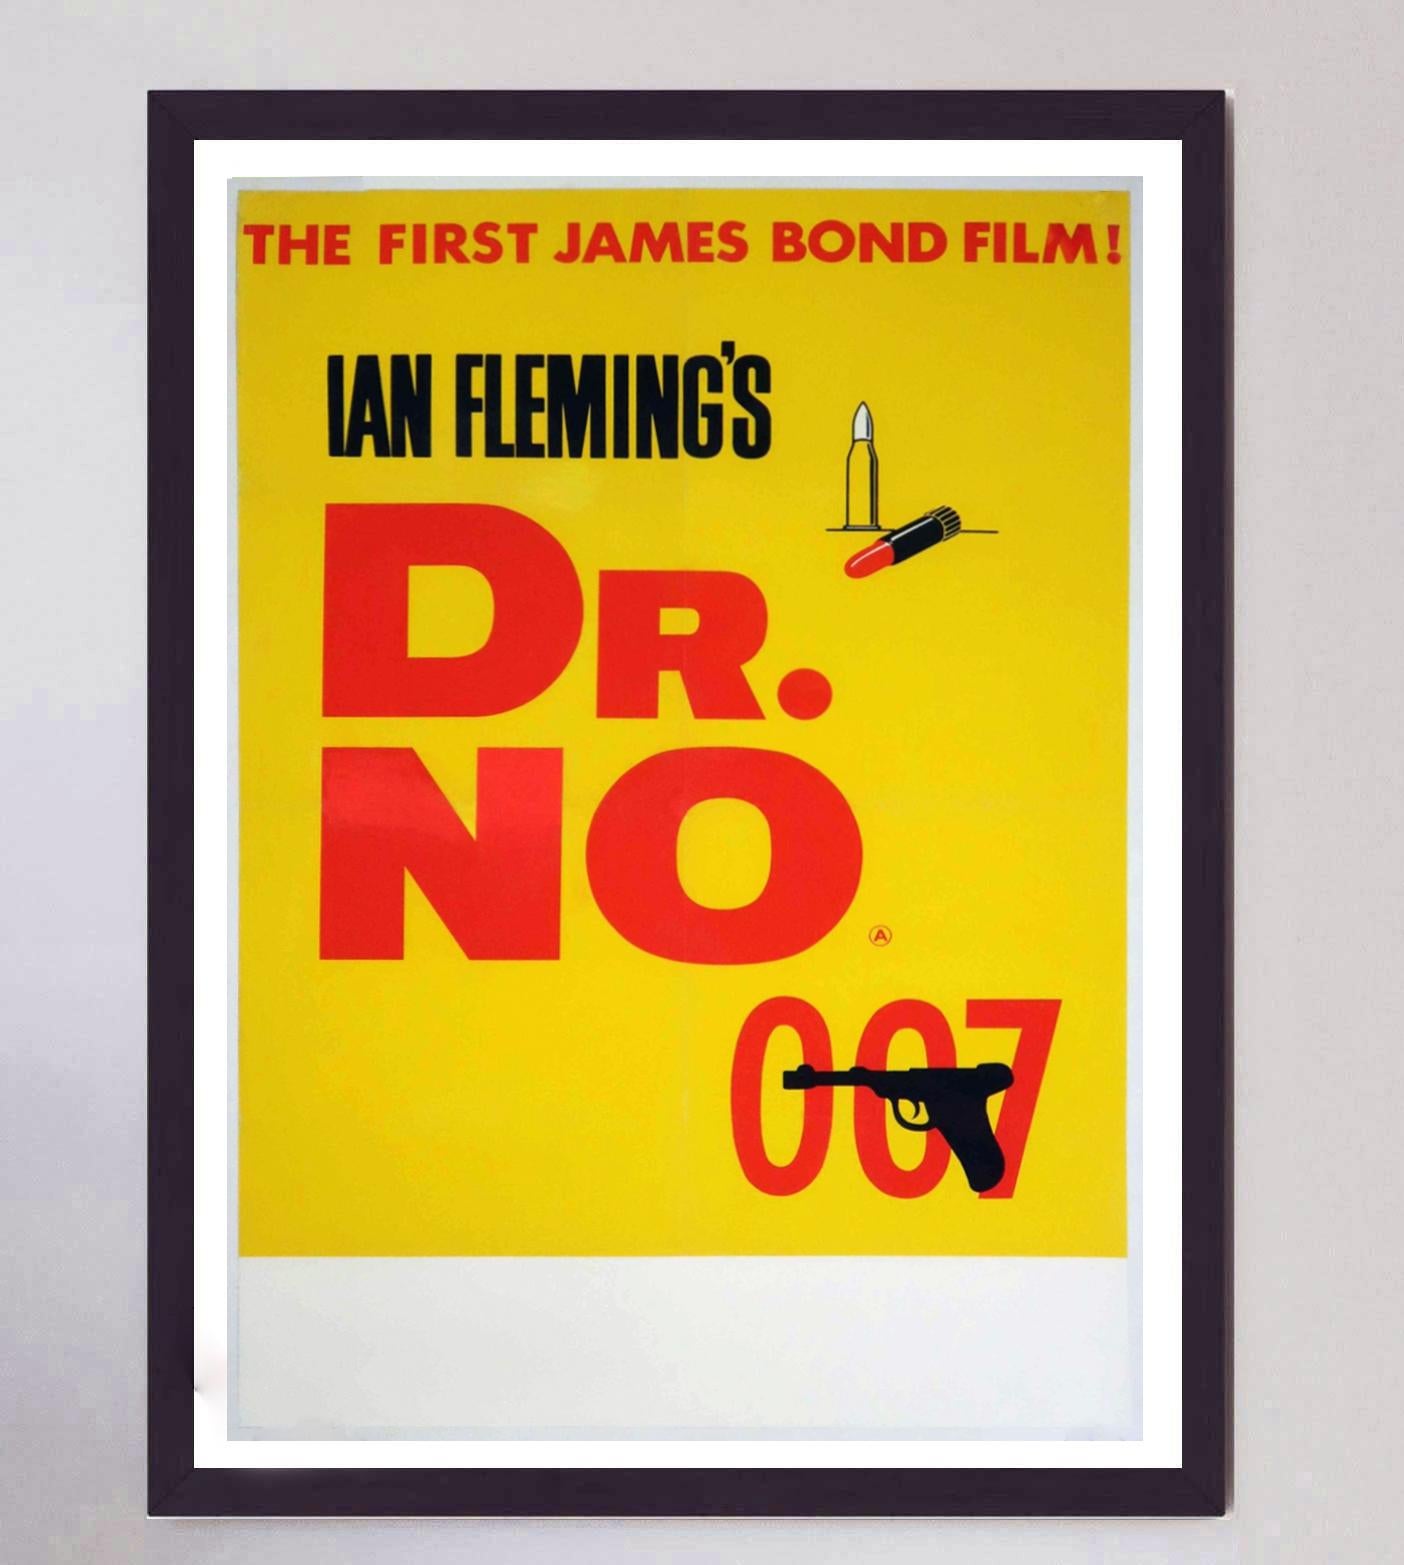 Premier film de la célèbre série James Bond, 